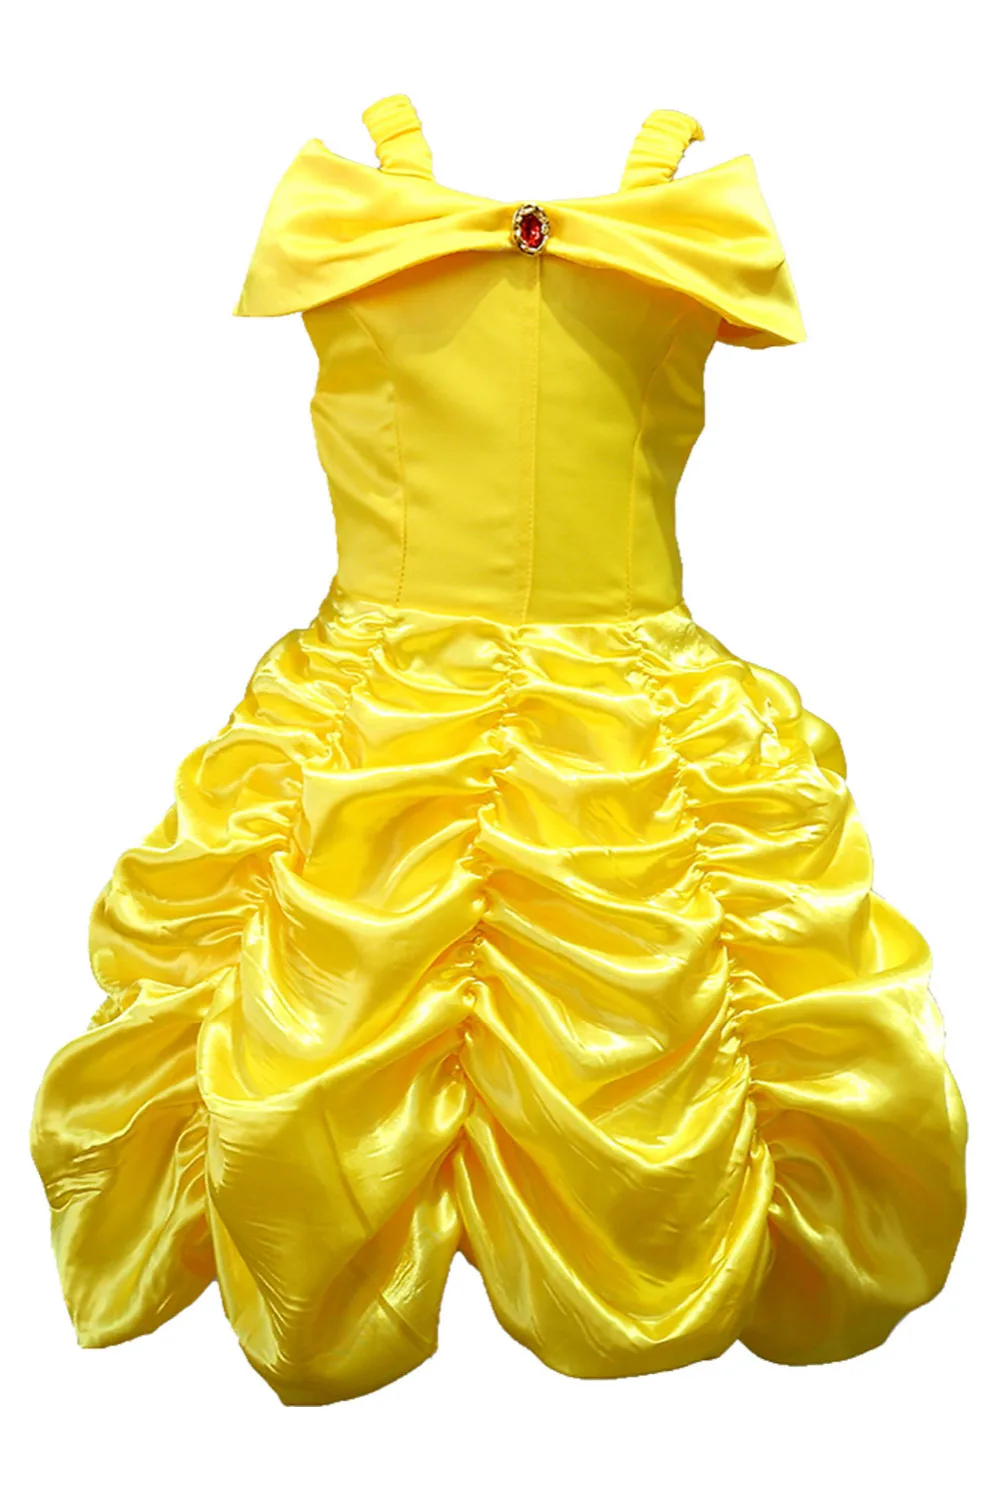 Girls Cartoon Princess Dress Kids Yellow Fancy Dress Children Cosplay